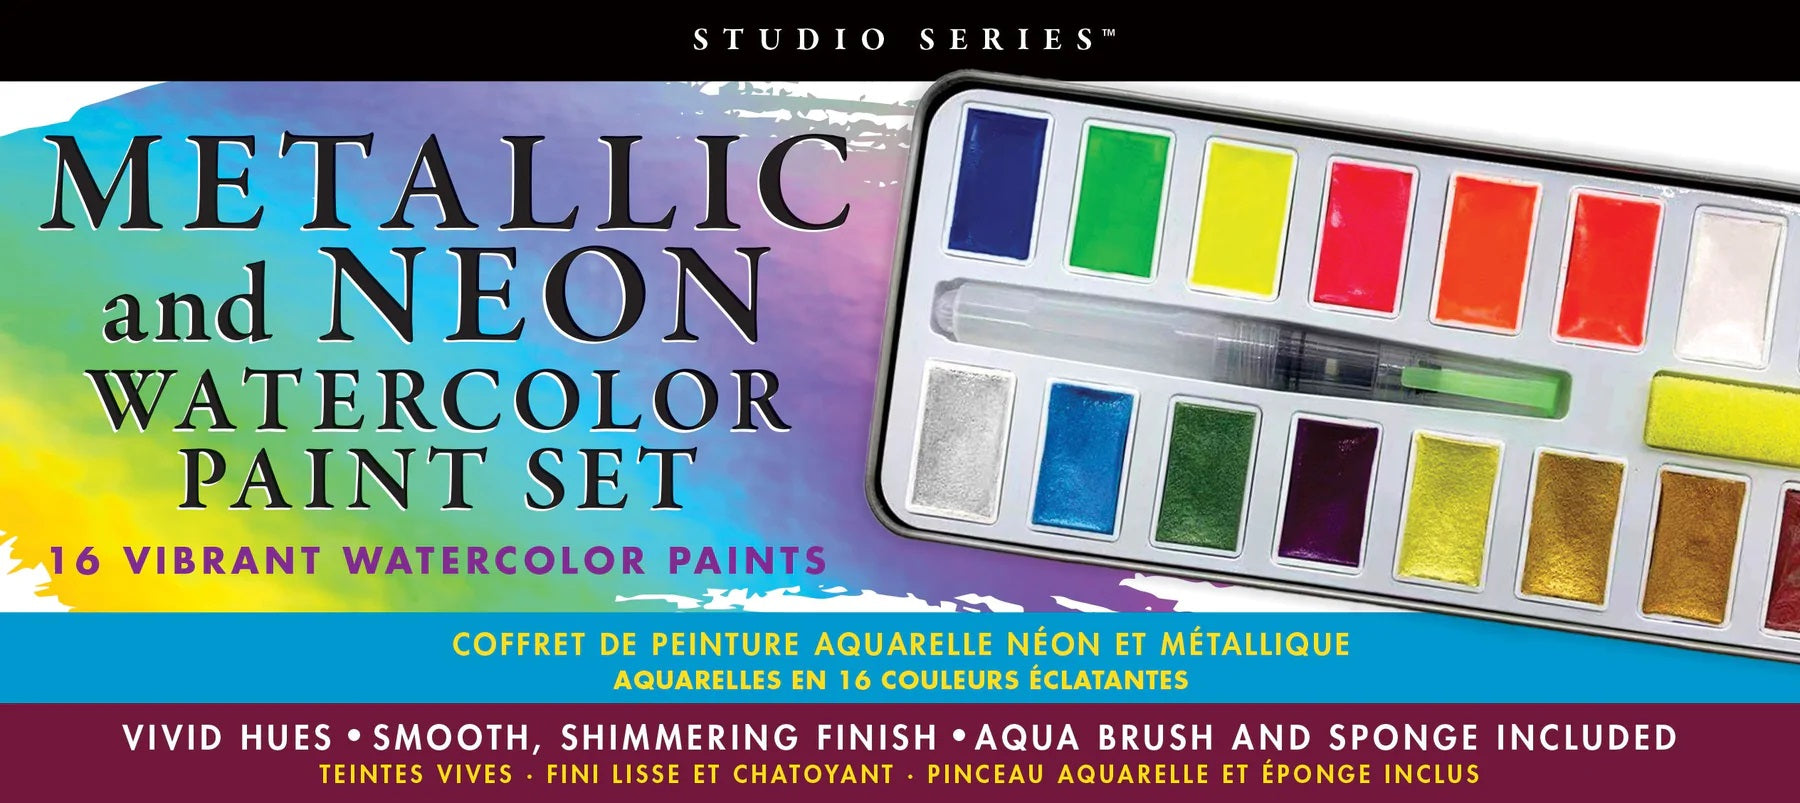 Metallic & Neon Watercolor Paint Set